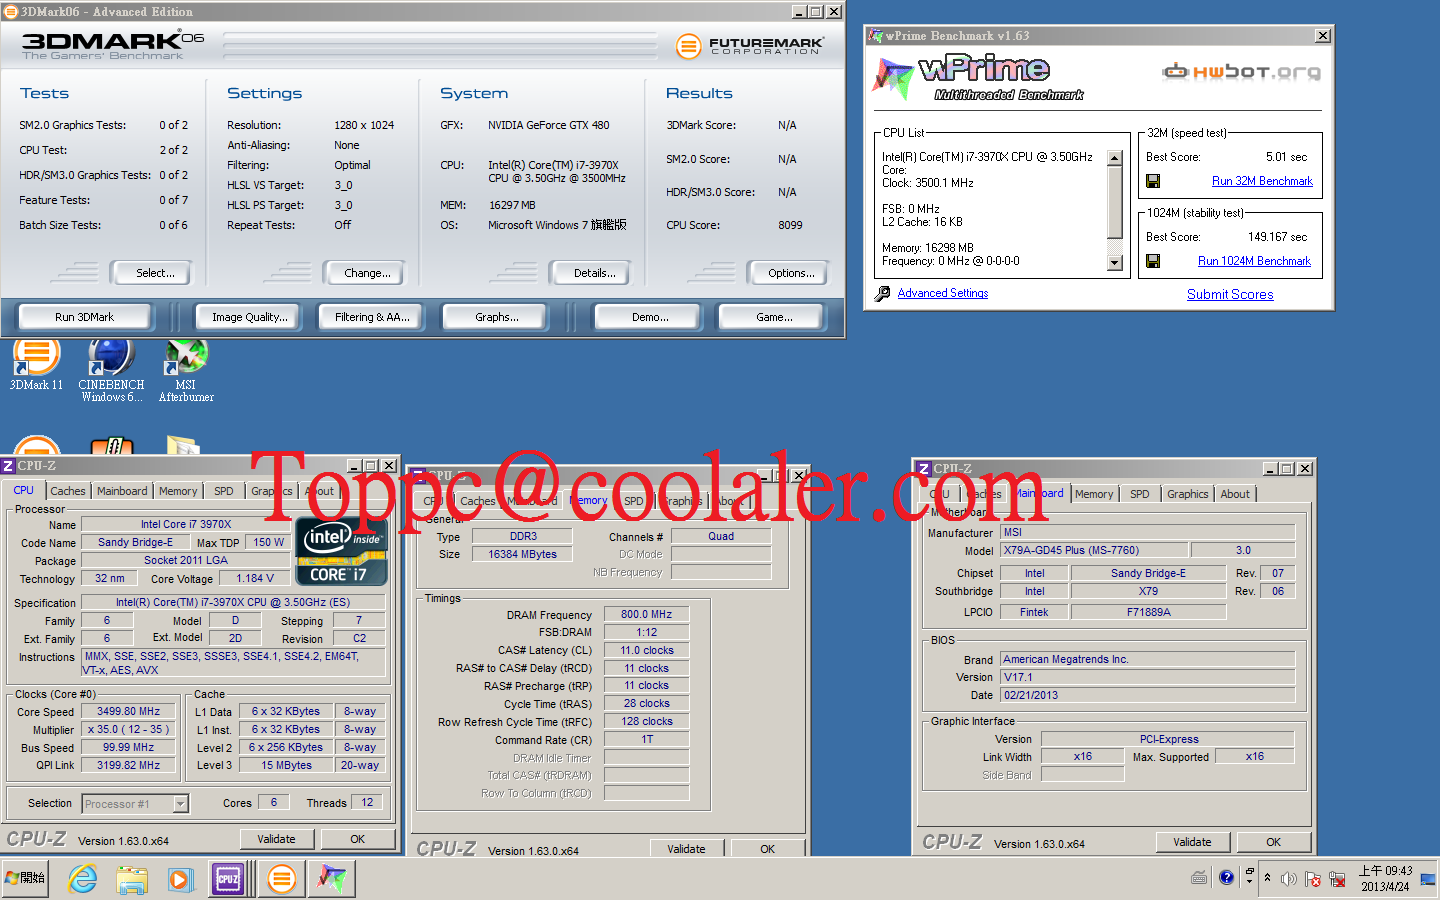 Risorsa grafica - foto, screenshot o immagine in genere - relativa ai contenuti pubblicati da unixzone.it | Nome immagine: news19423_Intel-Ivy-Bridge-E-4960X-vs-Sandy-Bridge-E-3970X-benchmark_3.png